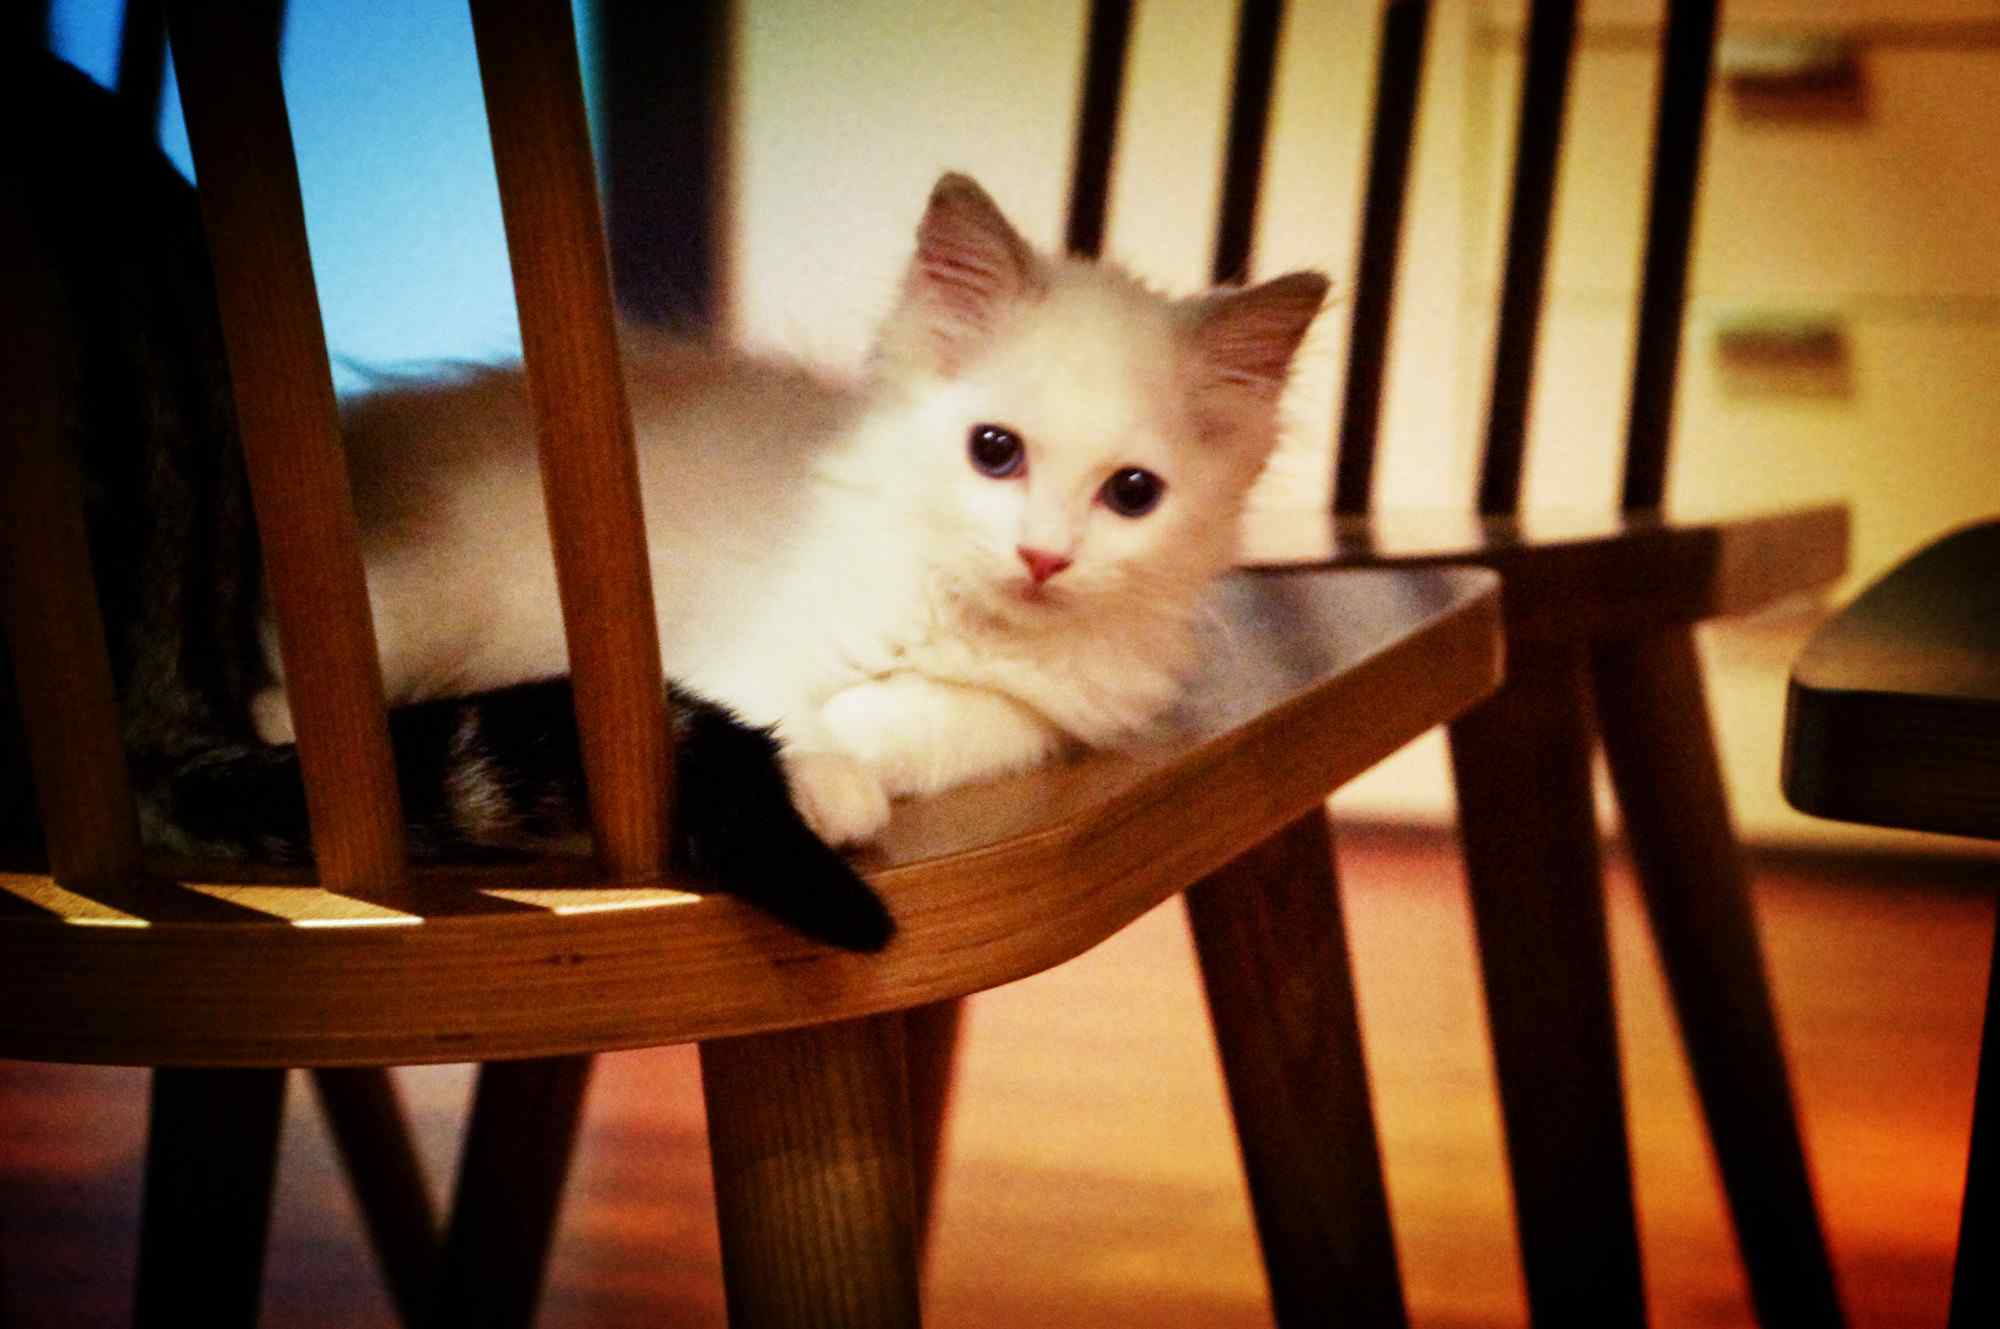 趴在椅子上的萌萌哒小布偶猫桌面壁纸